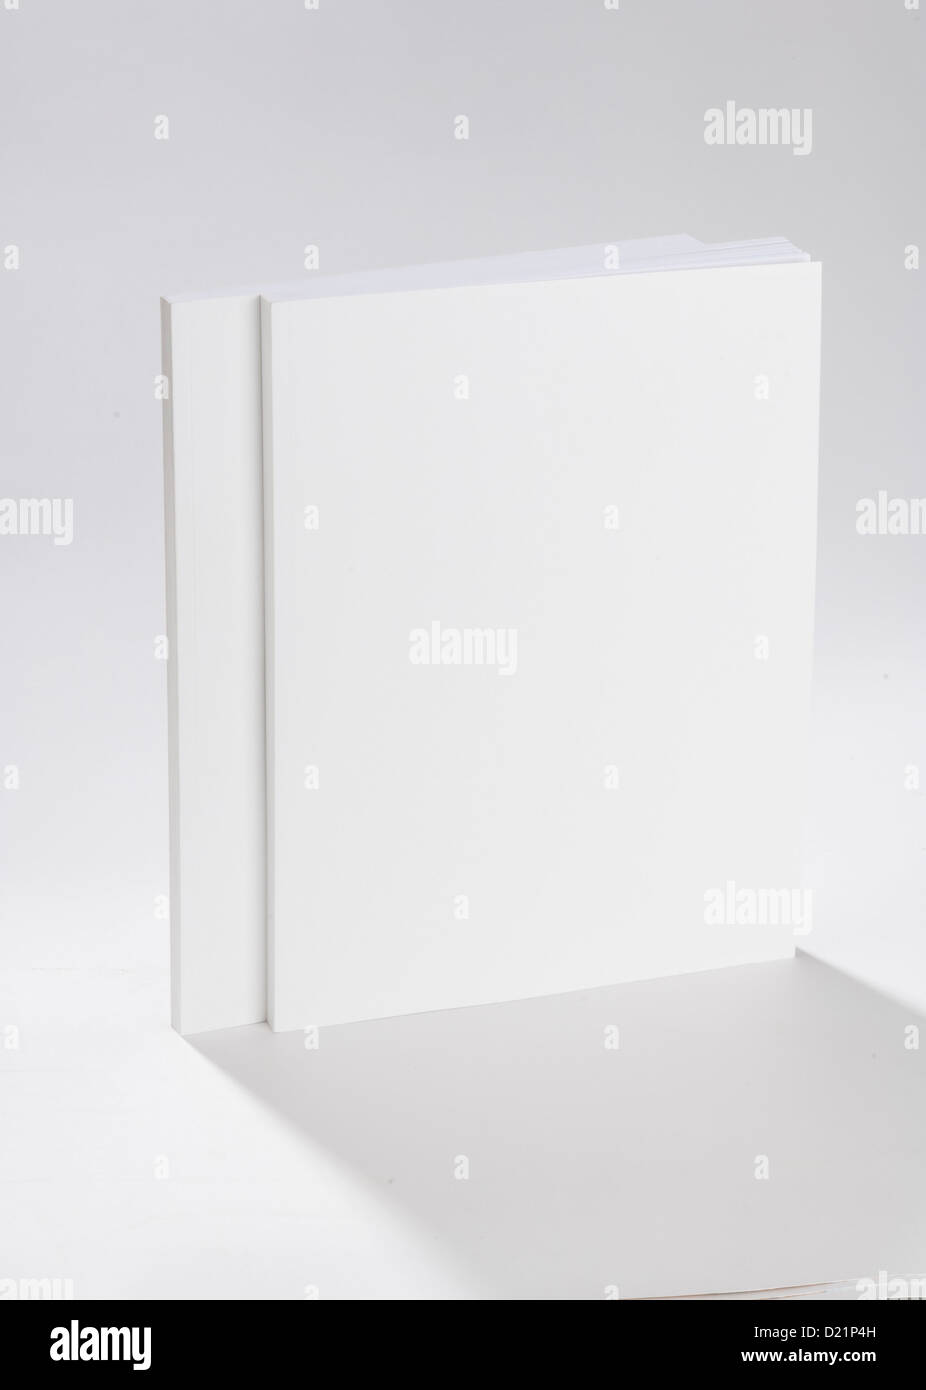 Two blank books on white ground Stock Photo